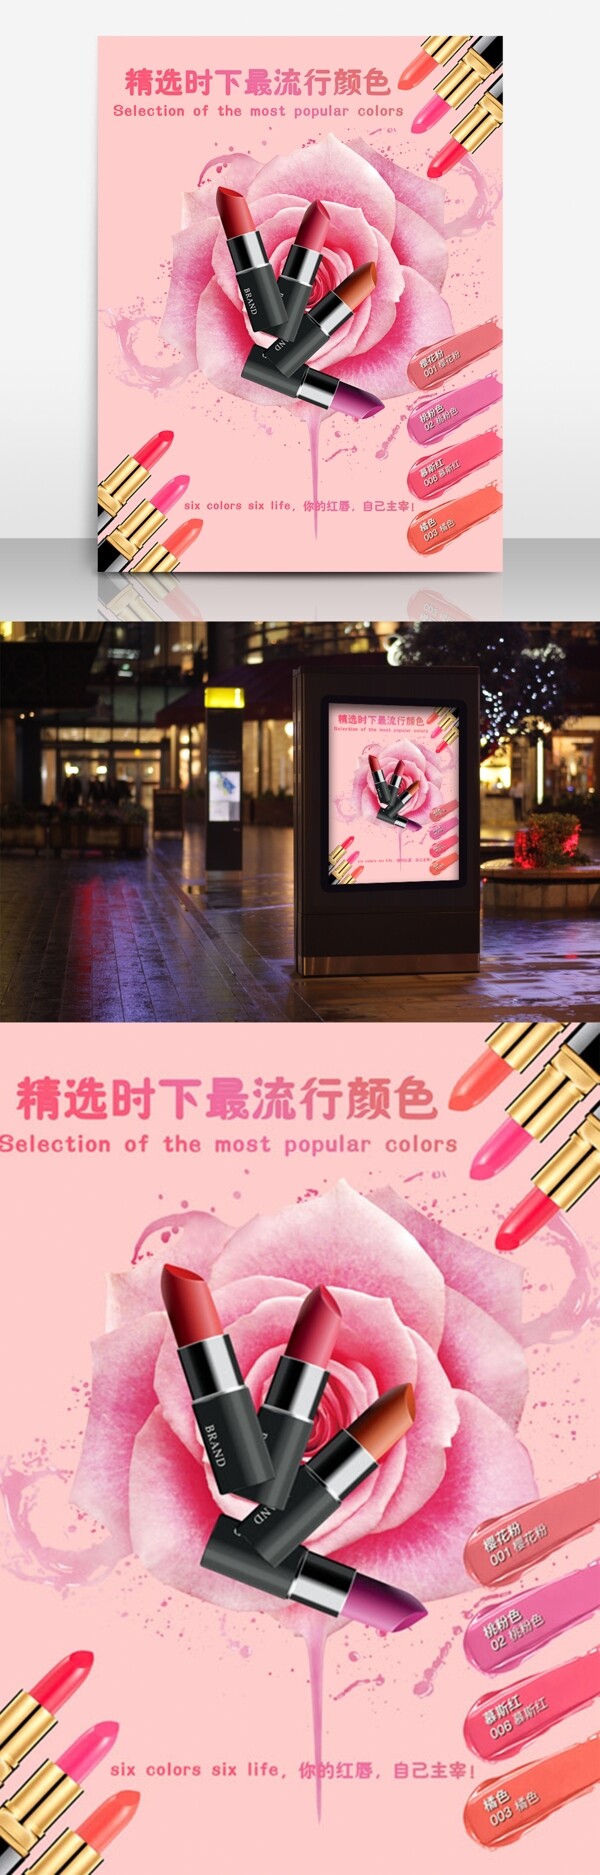 口红美妆节宣传海报